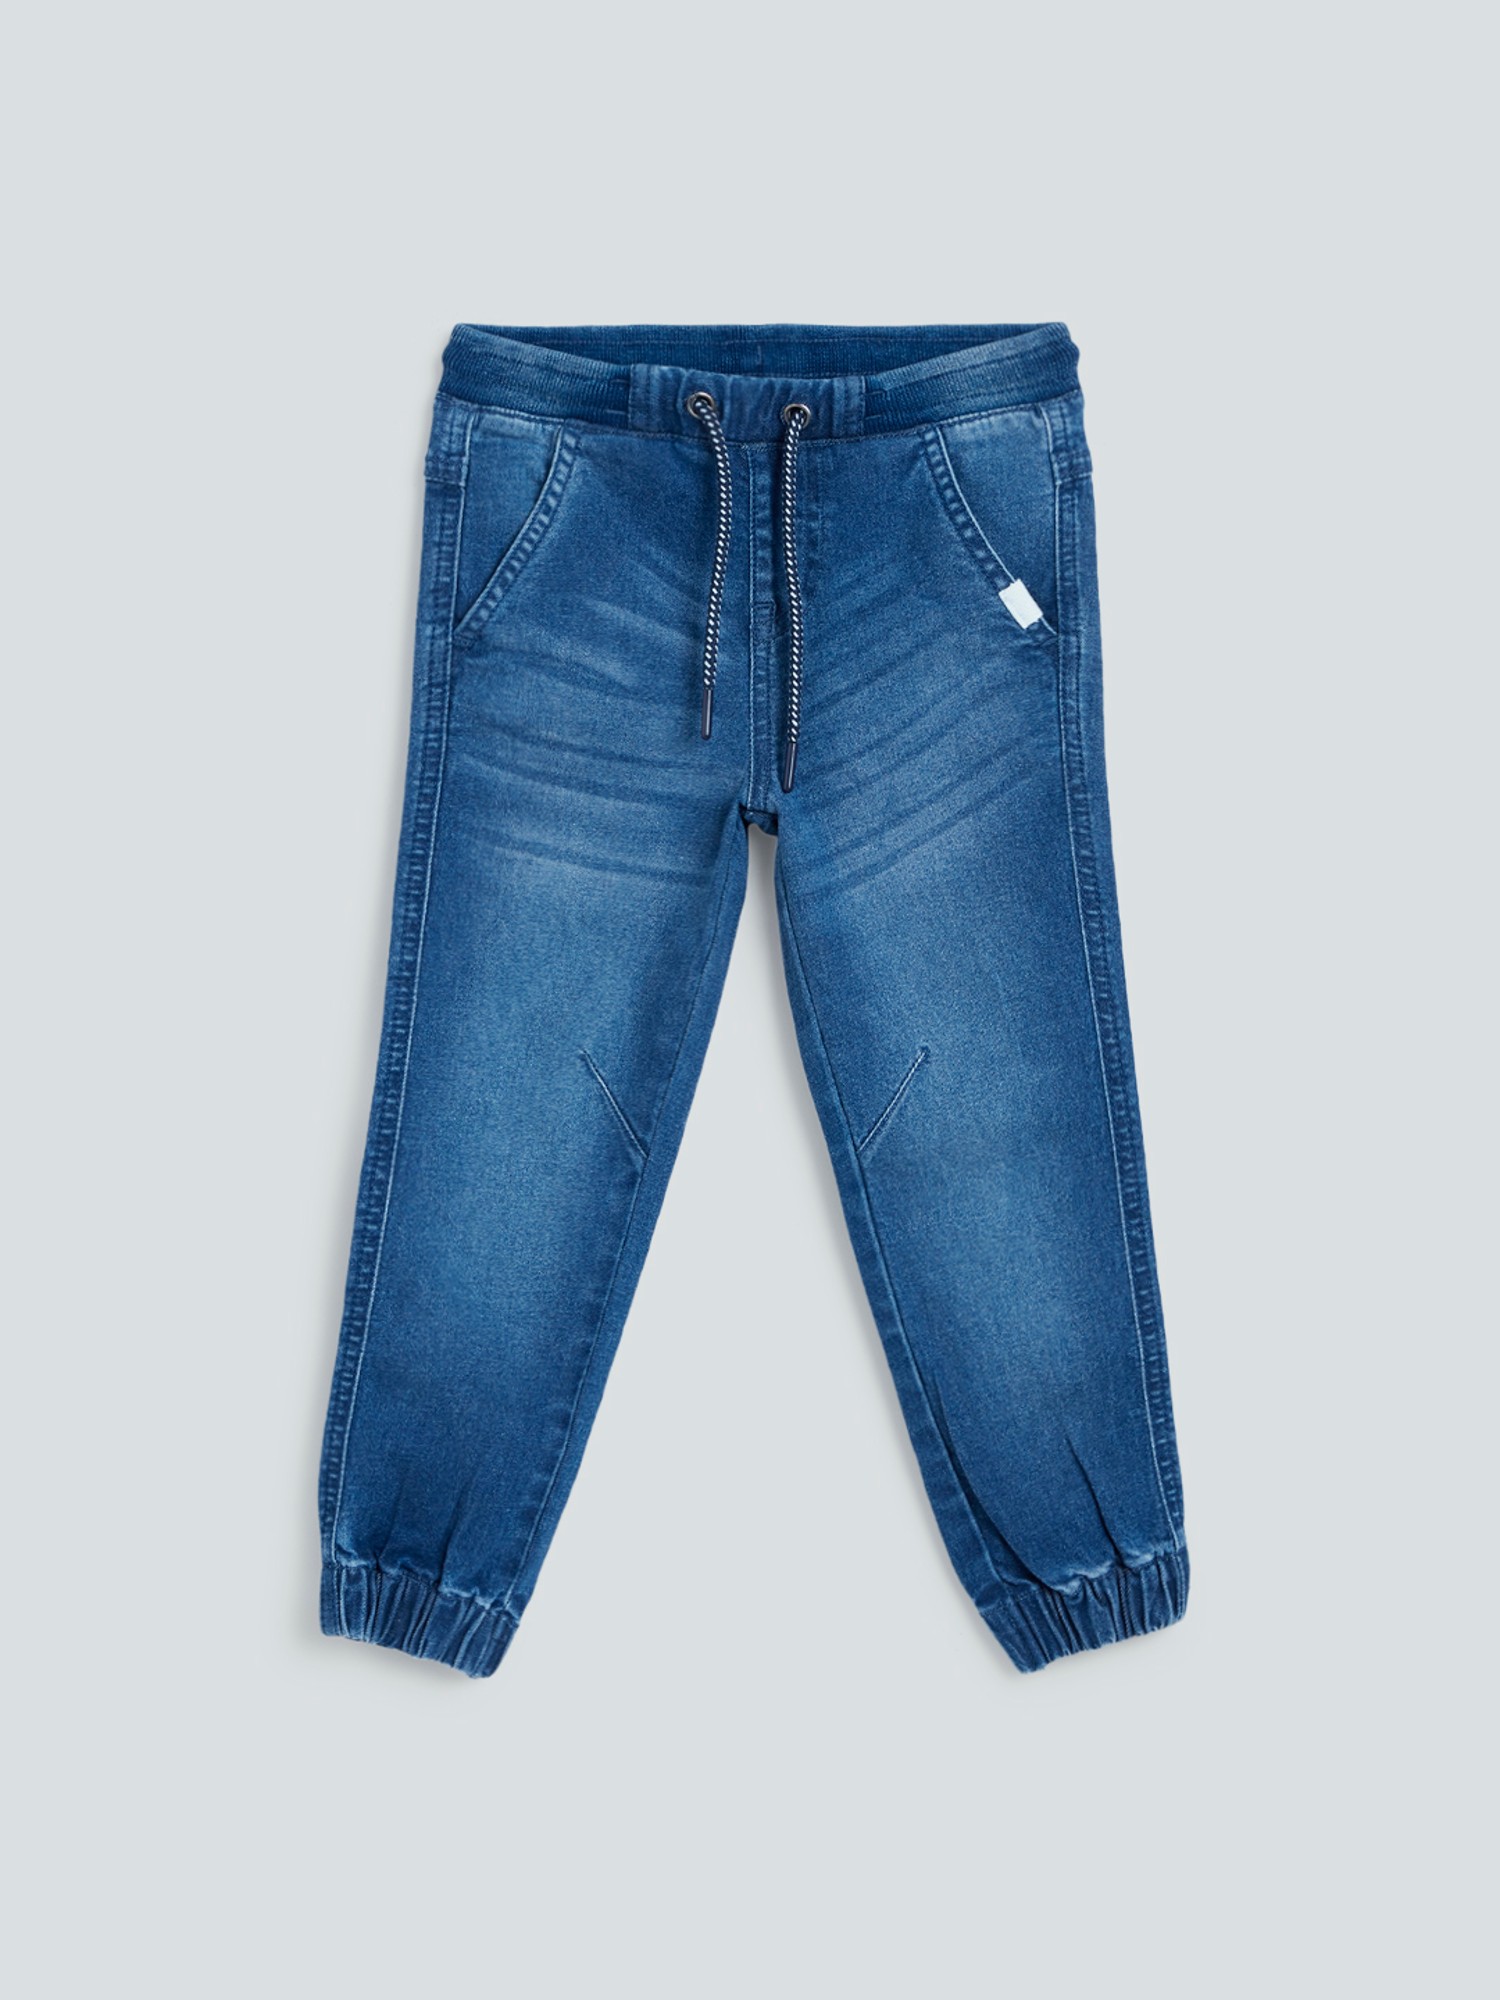 Buy HOP Kids Solid Blue Denim Jeans from Westside